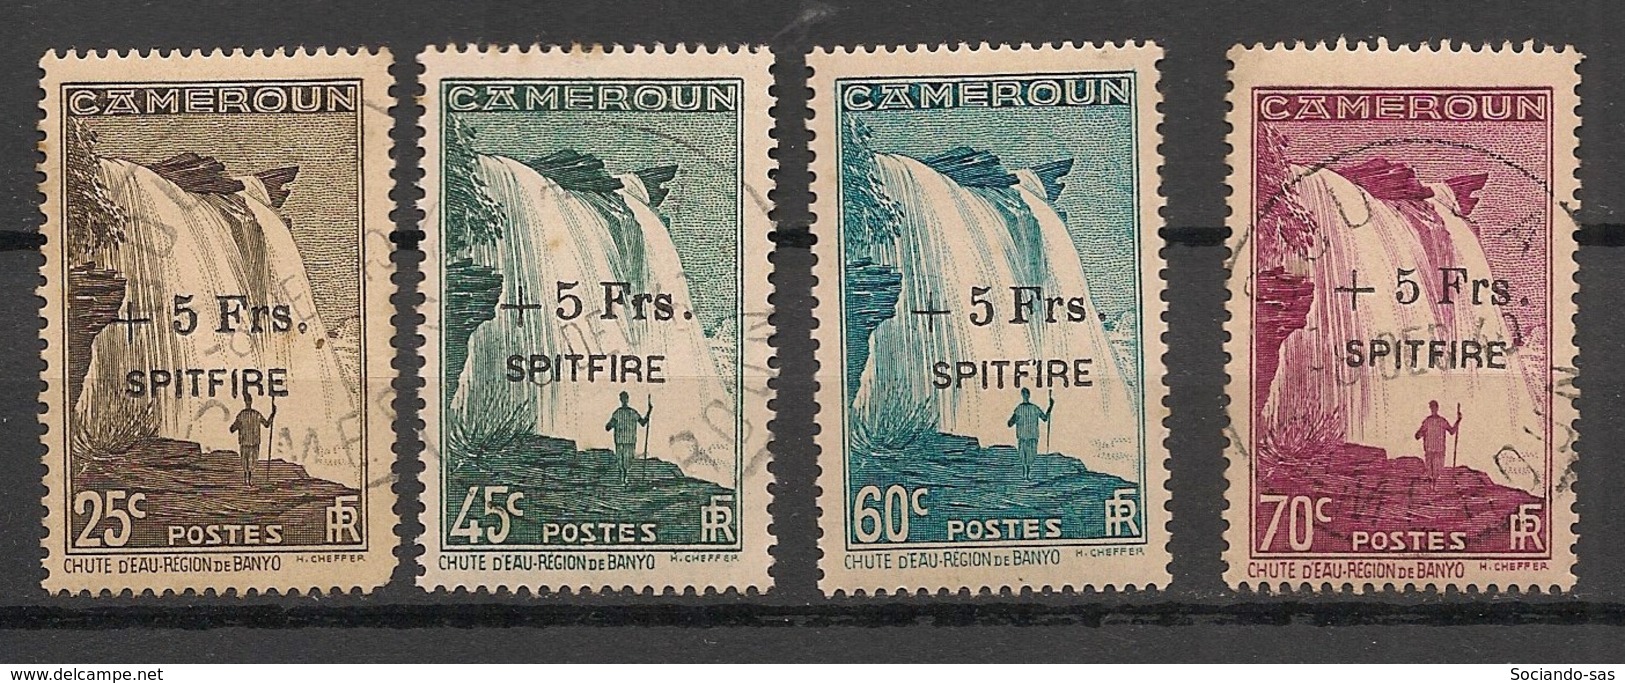 Cameroun - 1940 - N°Yv. 236 à 239 - Série Complète Spitfire - Oblitéré / Used - Gebraucht